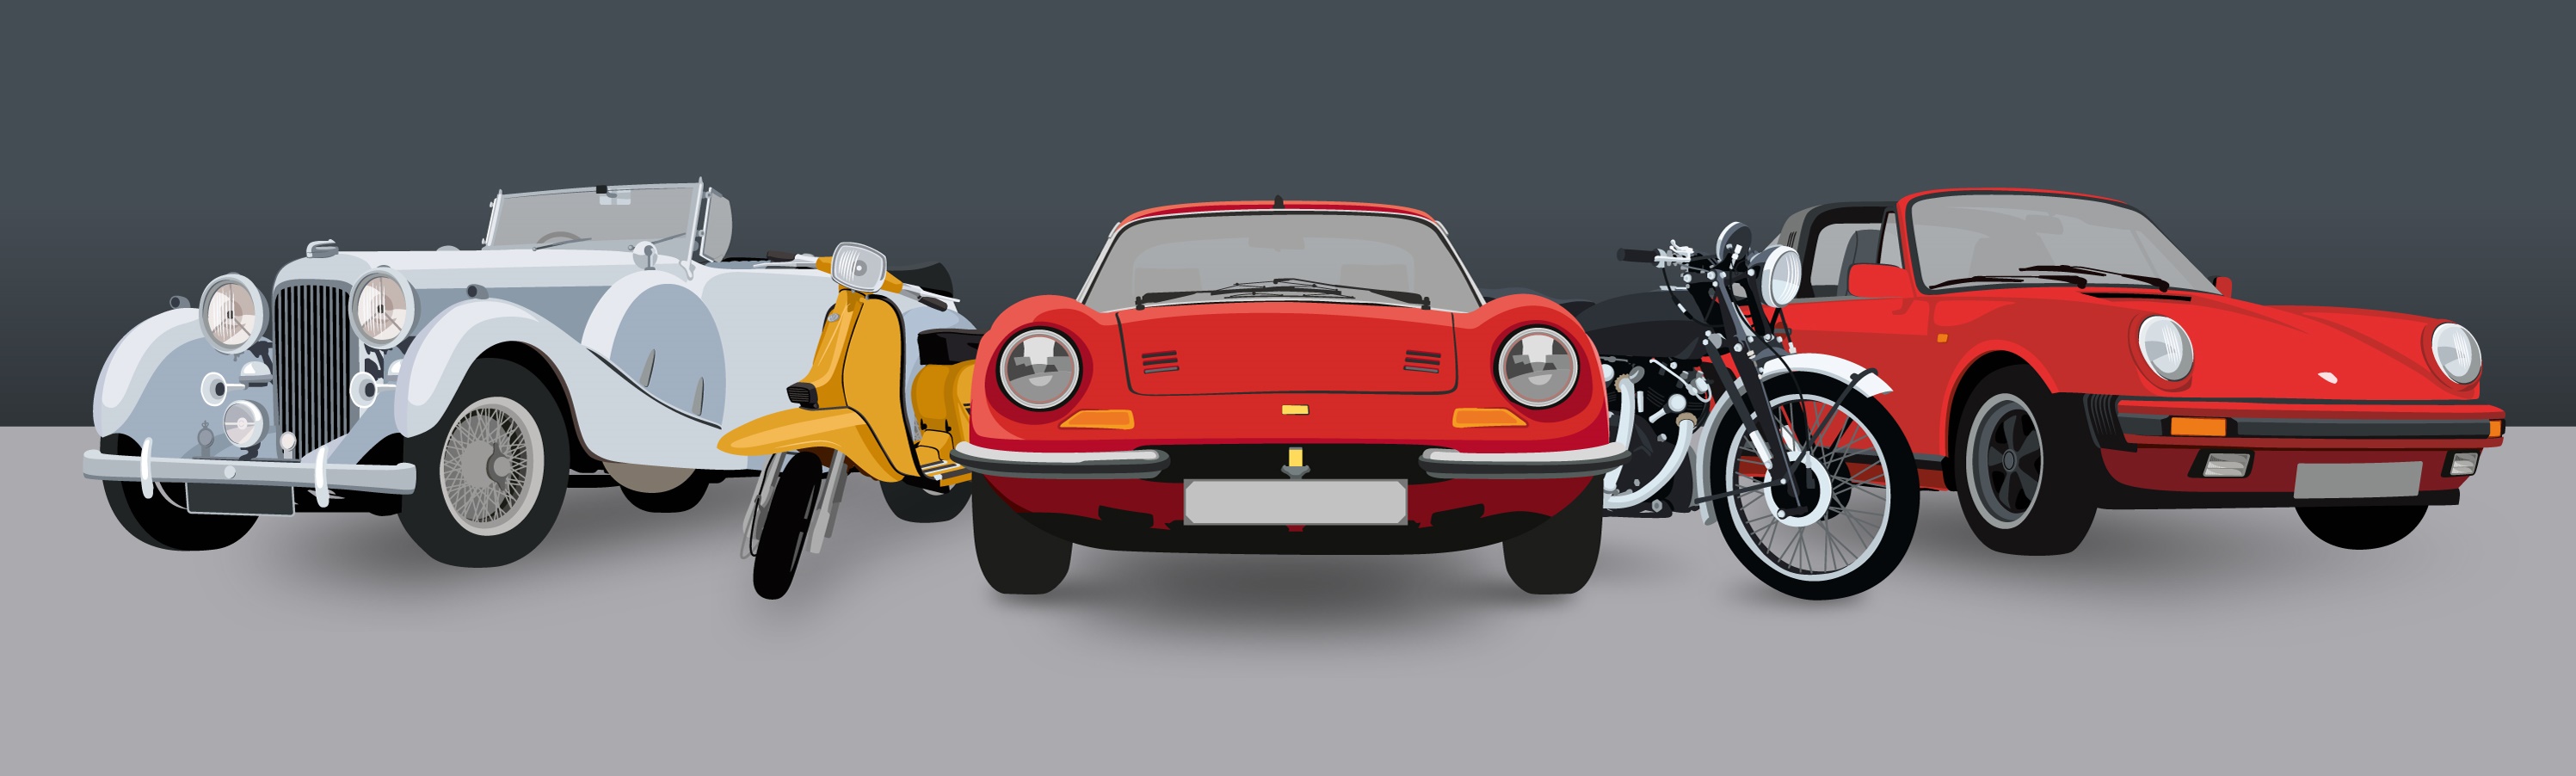 An illustration of a classic Lagonda, a Lambretta scooter, a Ferrari, a Vincent motorcycle and a Porsche